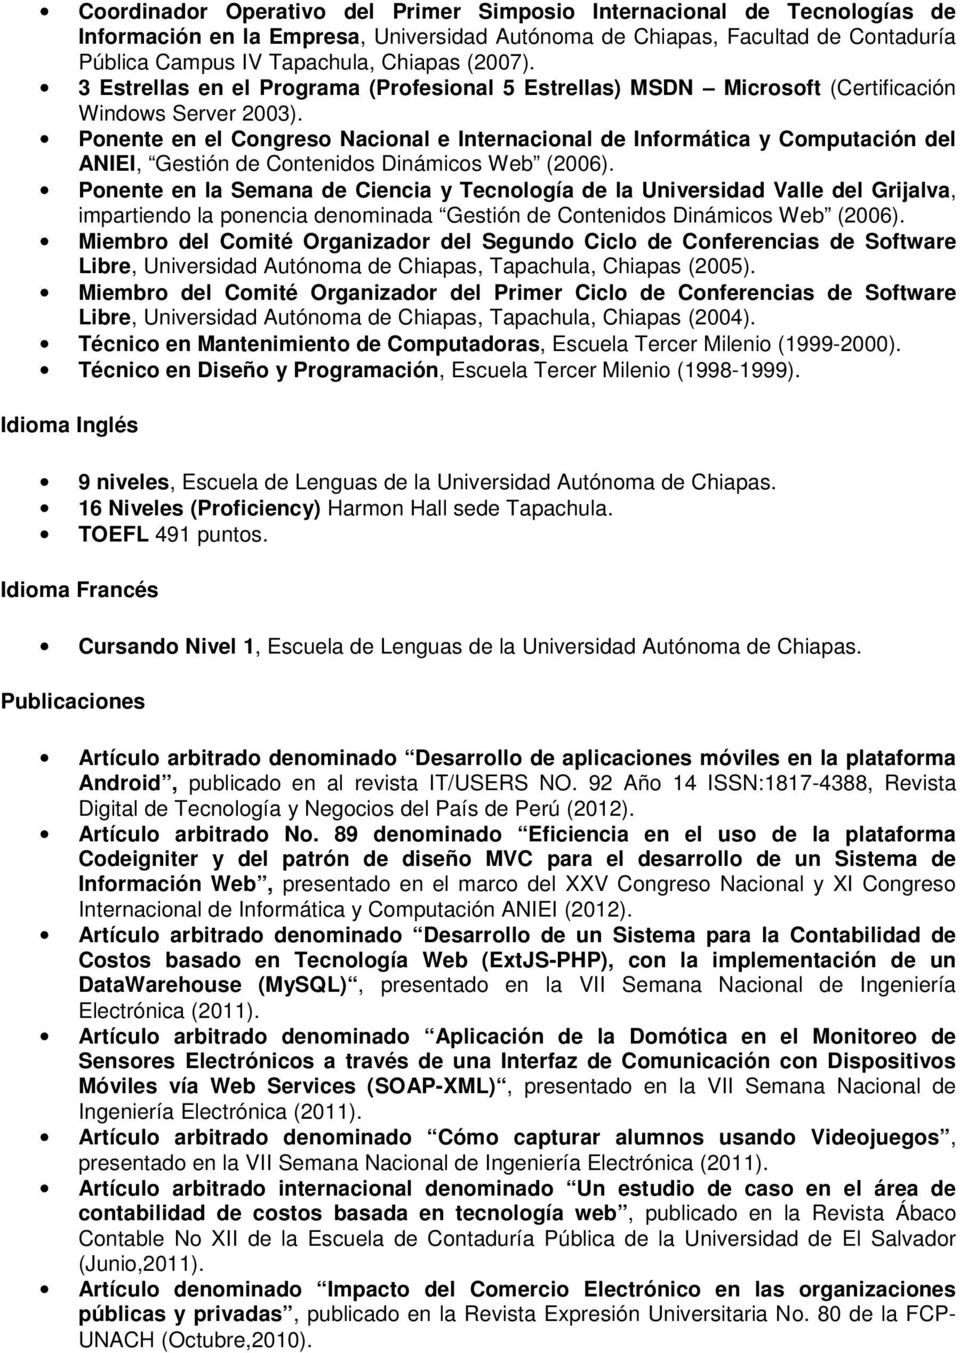 Ponente en el Congreso Nacional e Internacional de Informática y Computación del ANIEI, Gestión de Contenidos Dinámicos Web (2006).